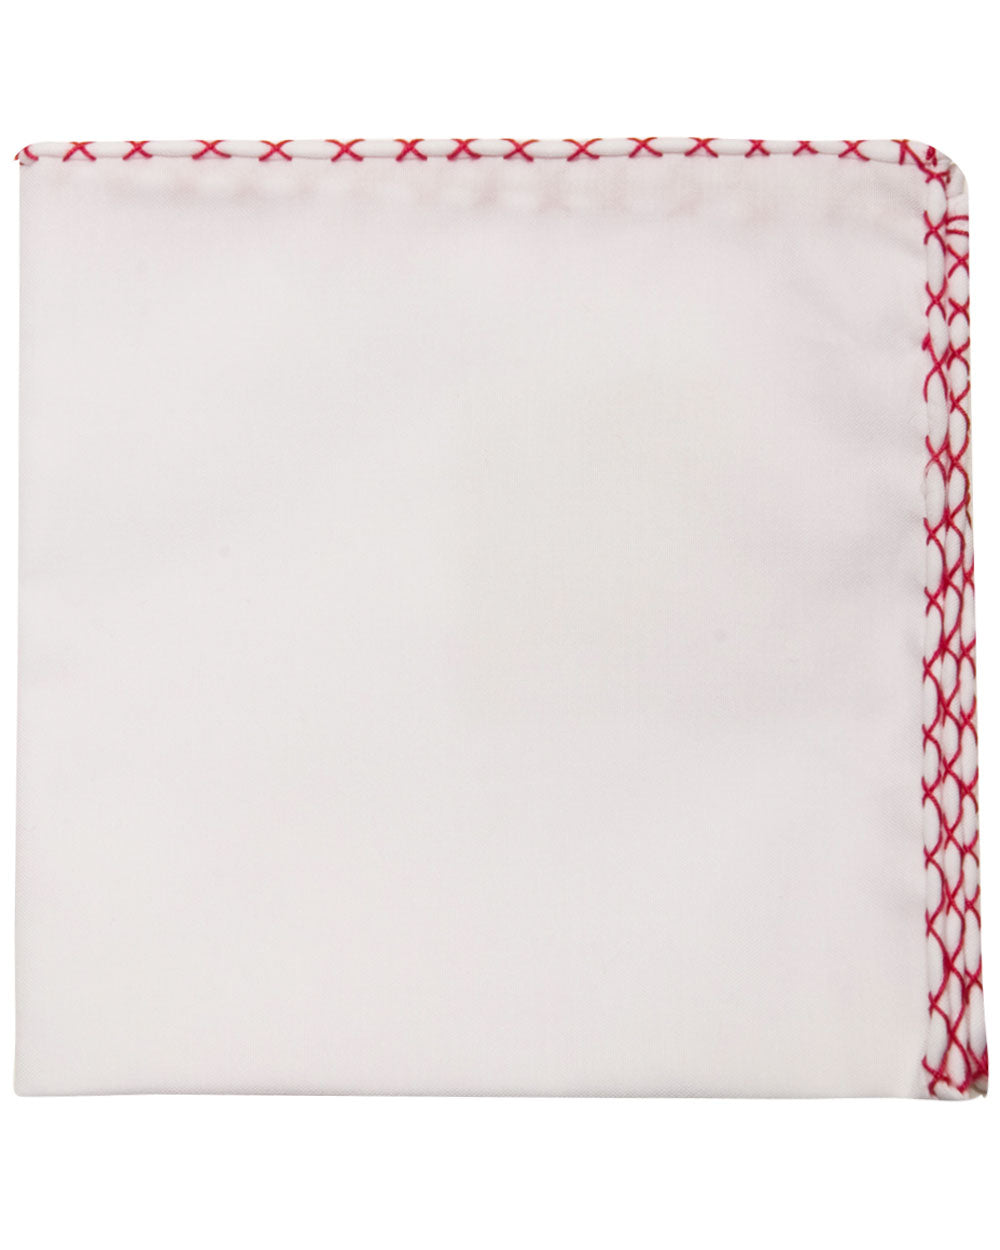 White and Red Hem Pocket Square